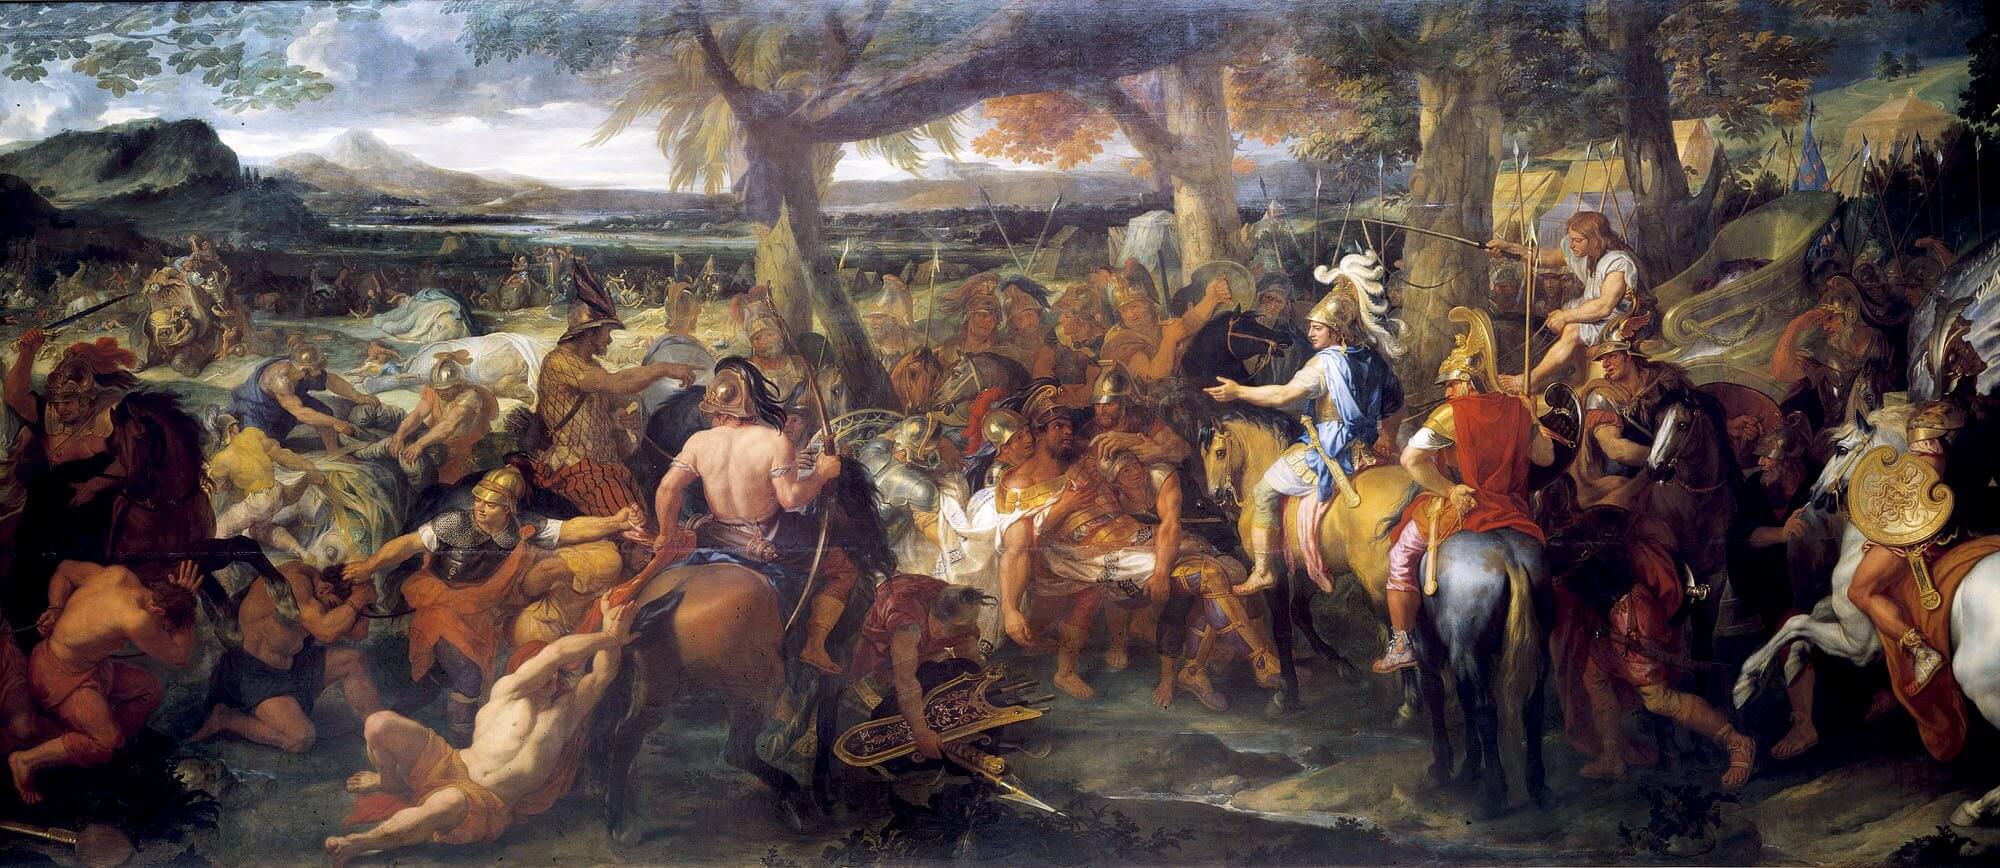 Pintura de Charles Le Brun mostrando a Alejandro y Porus durante la batalla del Hidaspes.